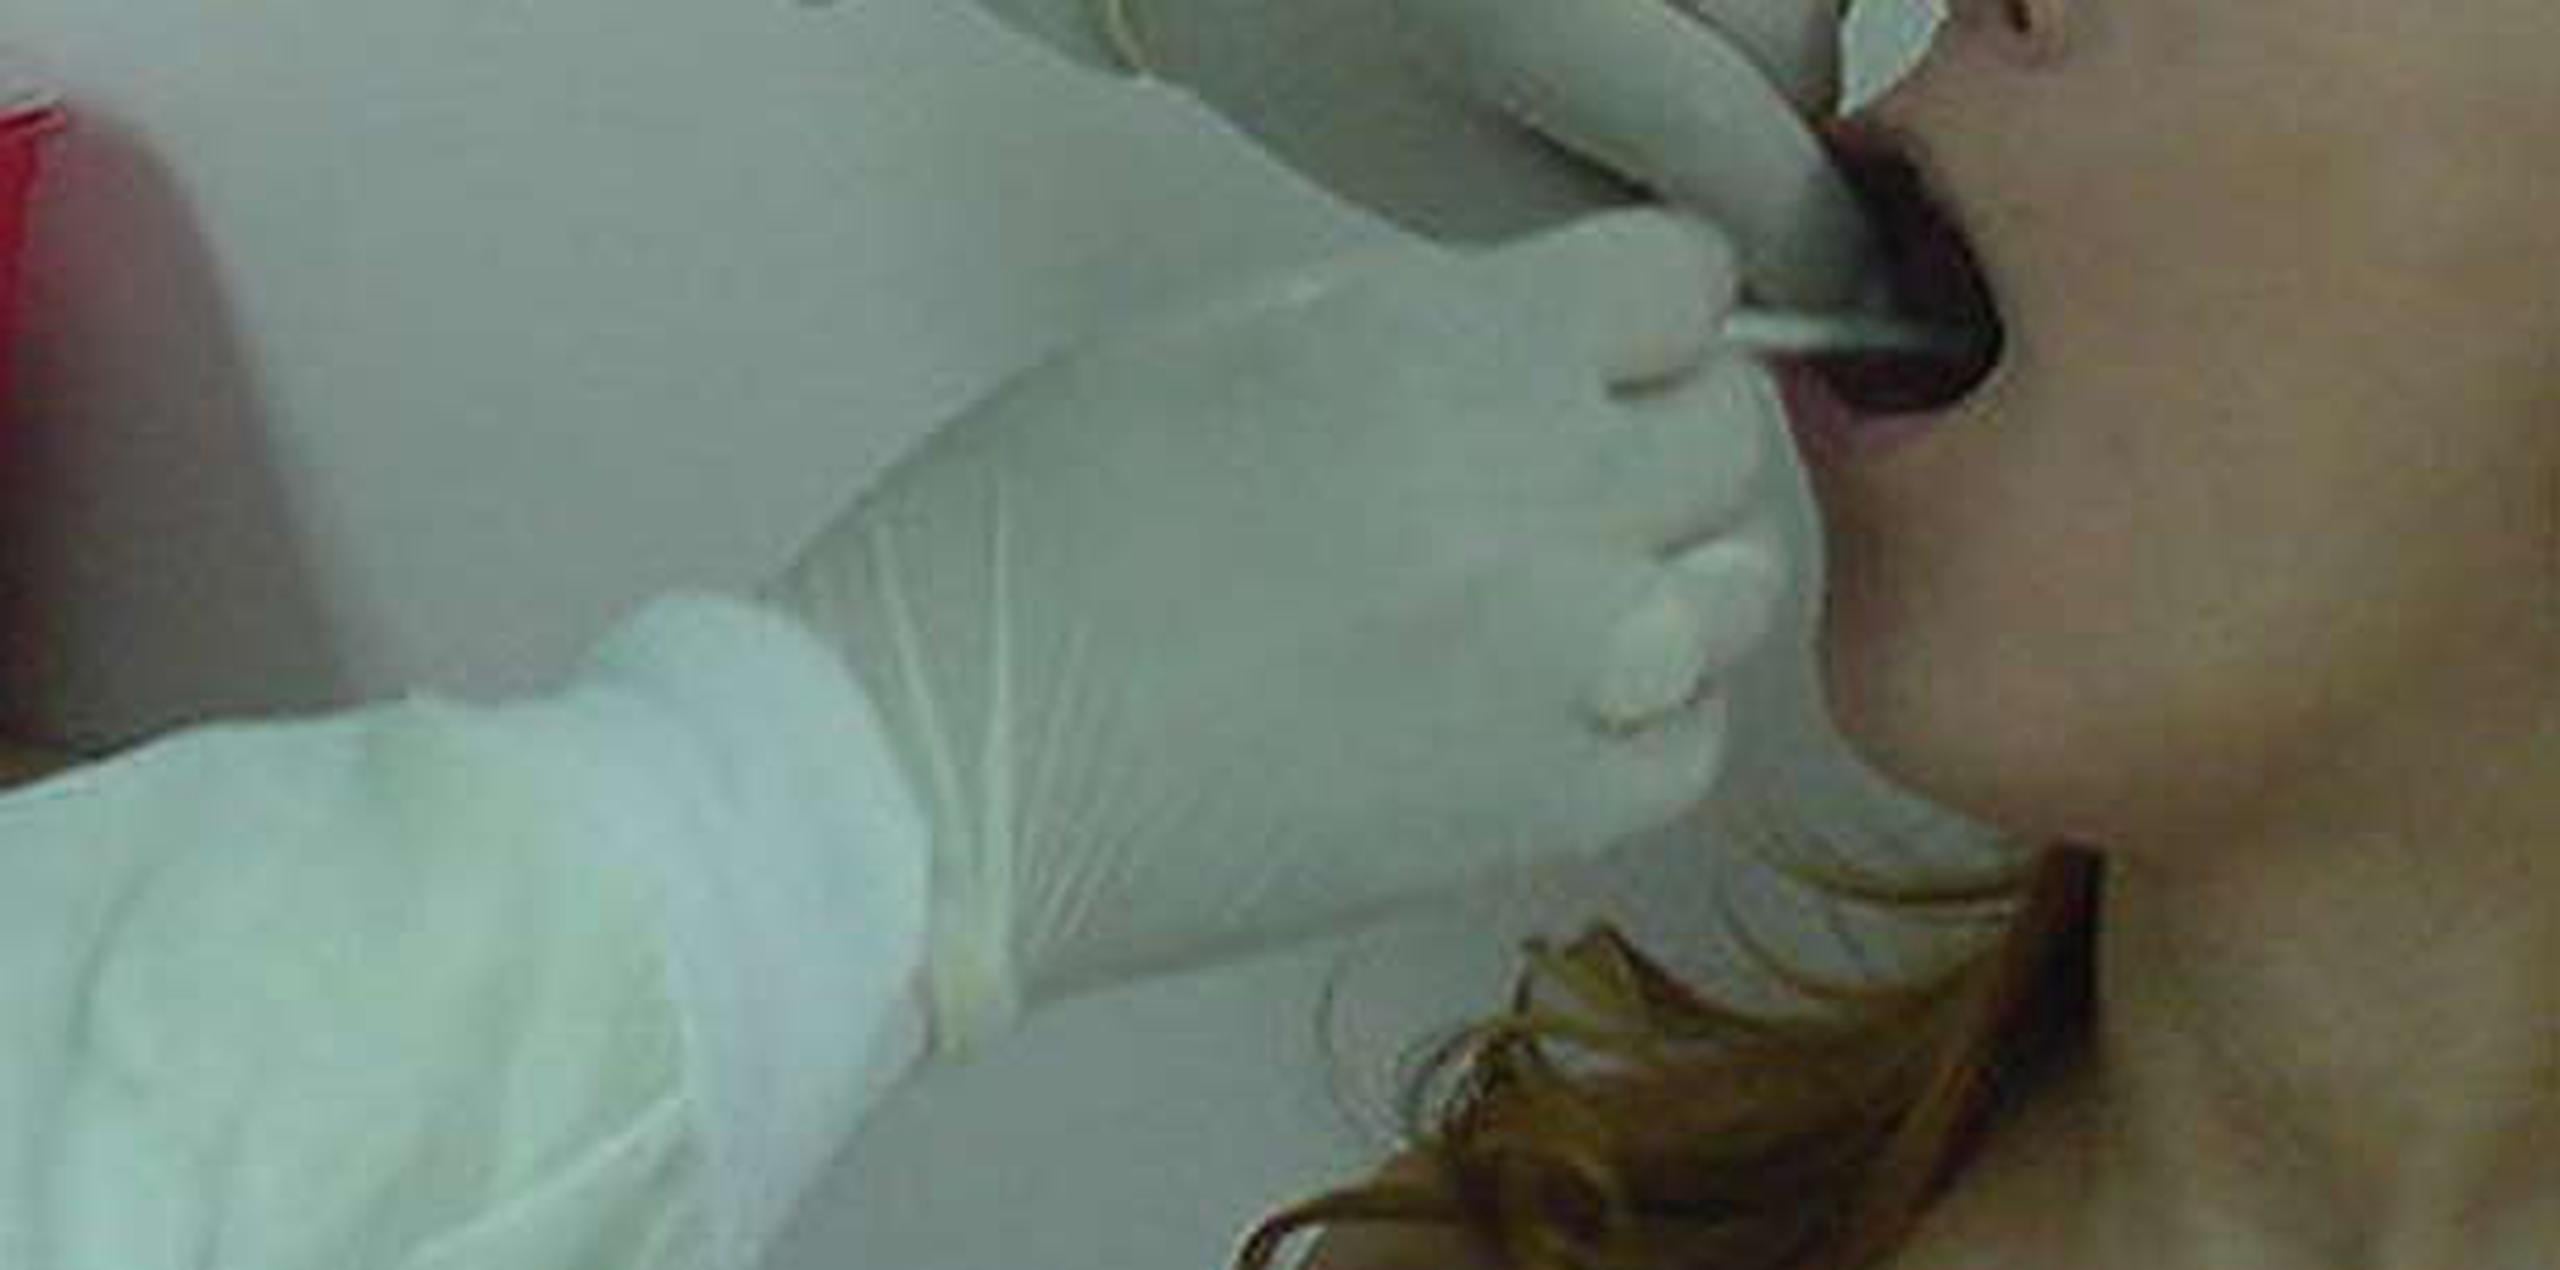 La prueba más fácil se realiza utilizando un hisopo para tomar una muestra del marcador genético desde el interior de la mejilla. (Archivo)